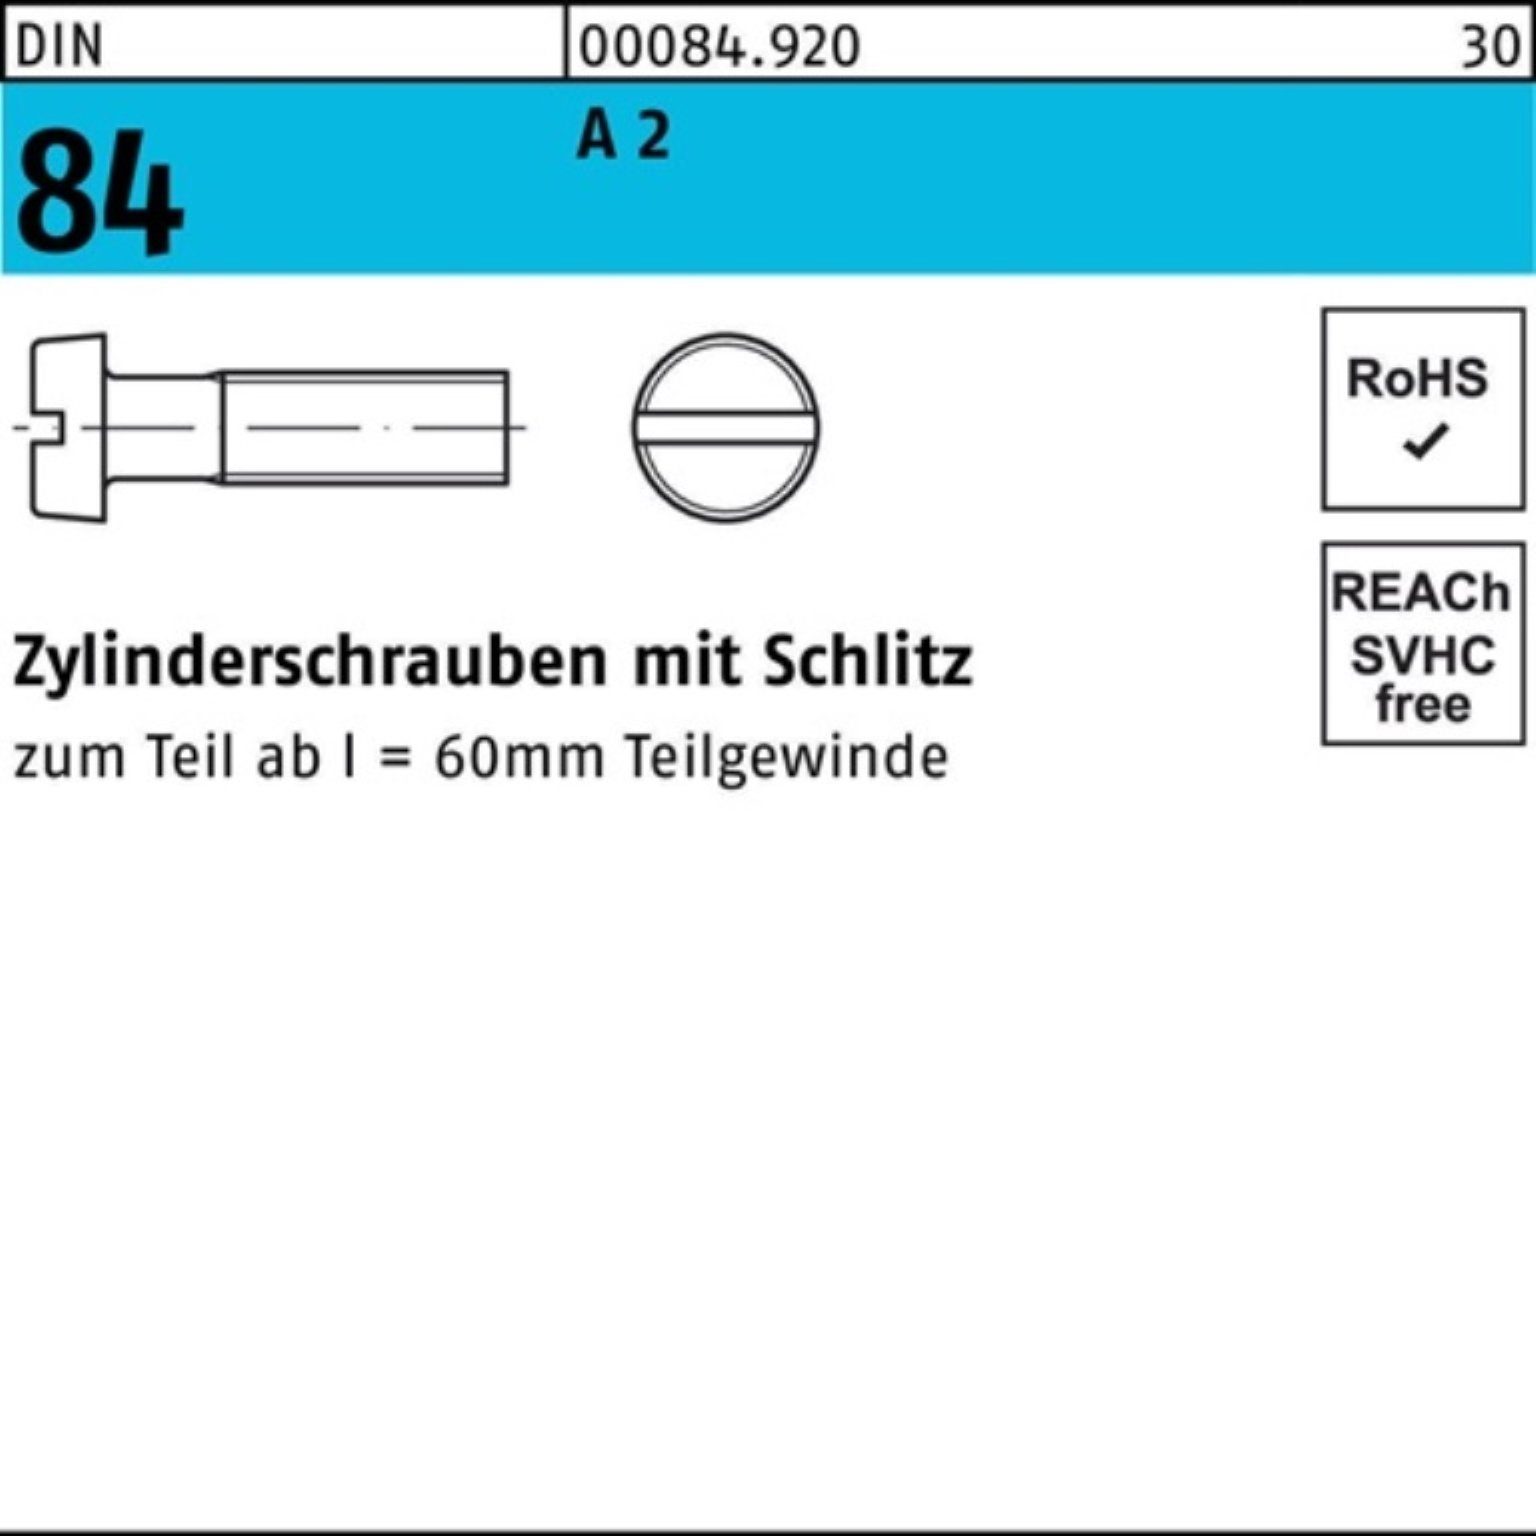 Pack 84/ISO Zylinderschraube 1207 Zylinderschraube DIN S Schlitz Reyher 200 20 A 2 M3,5x 200er